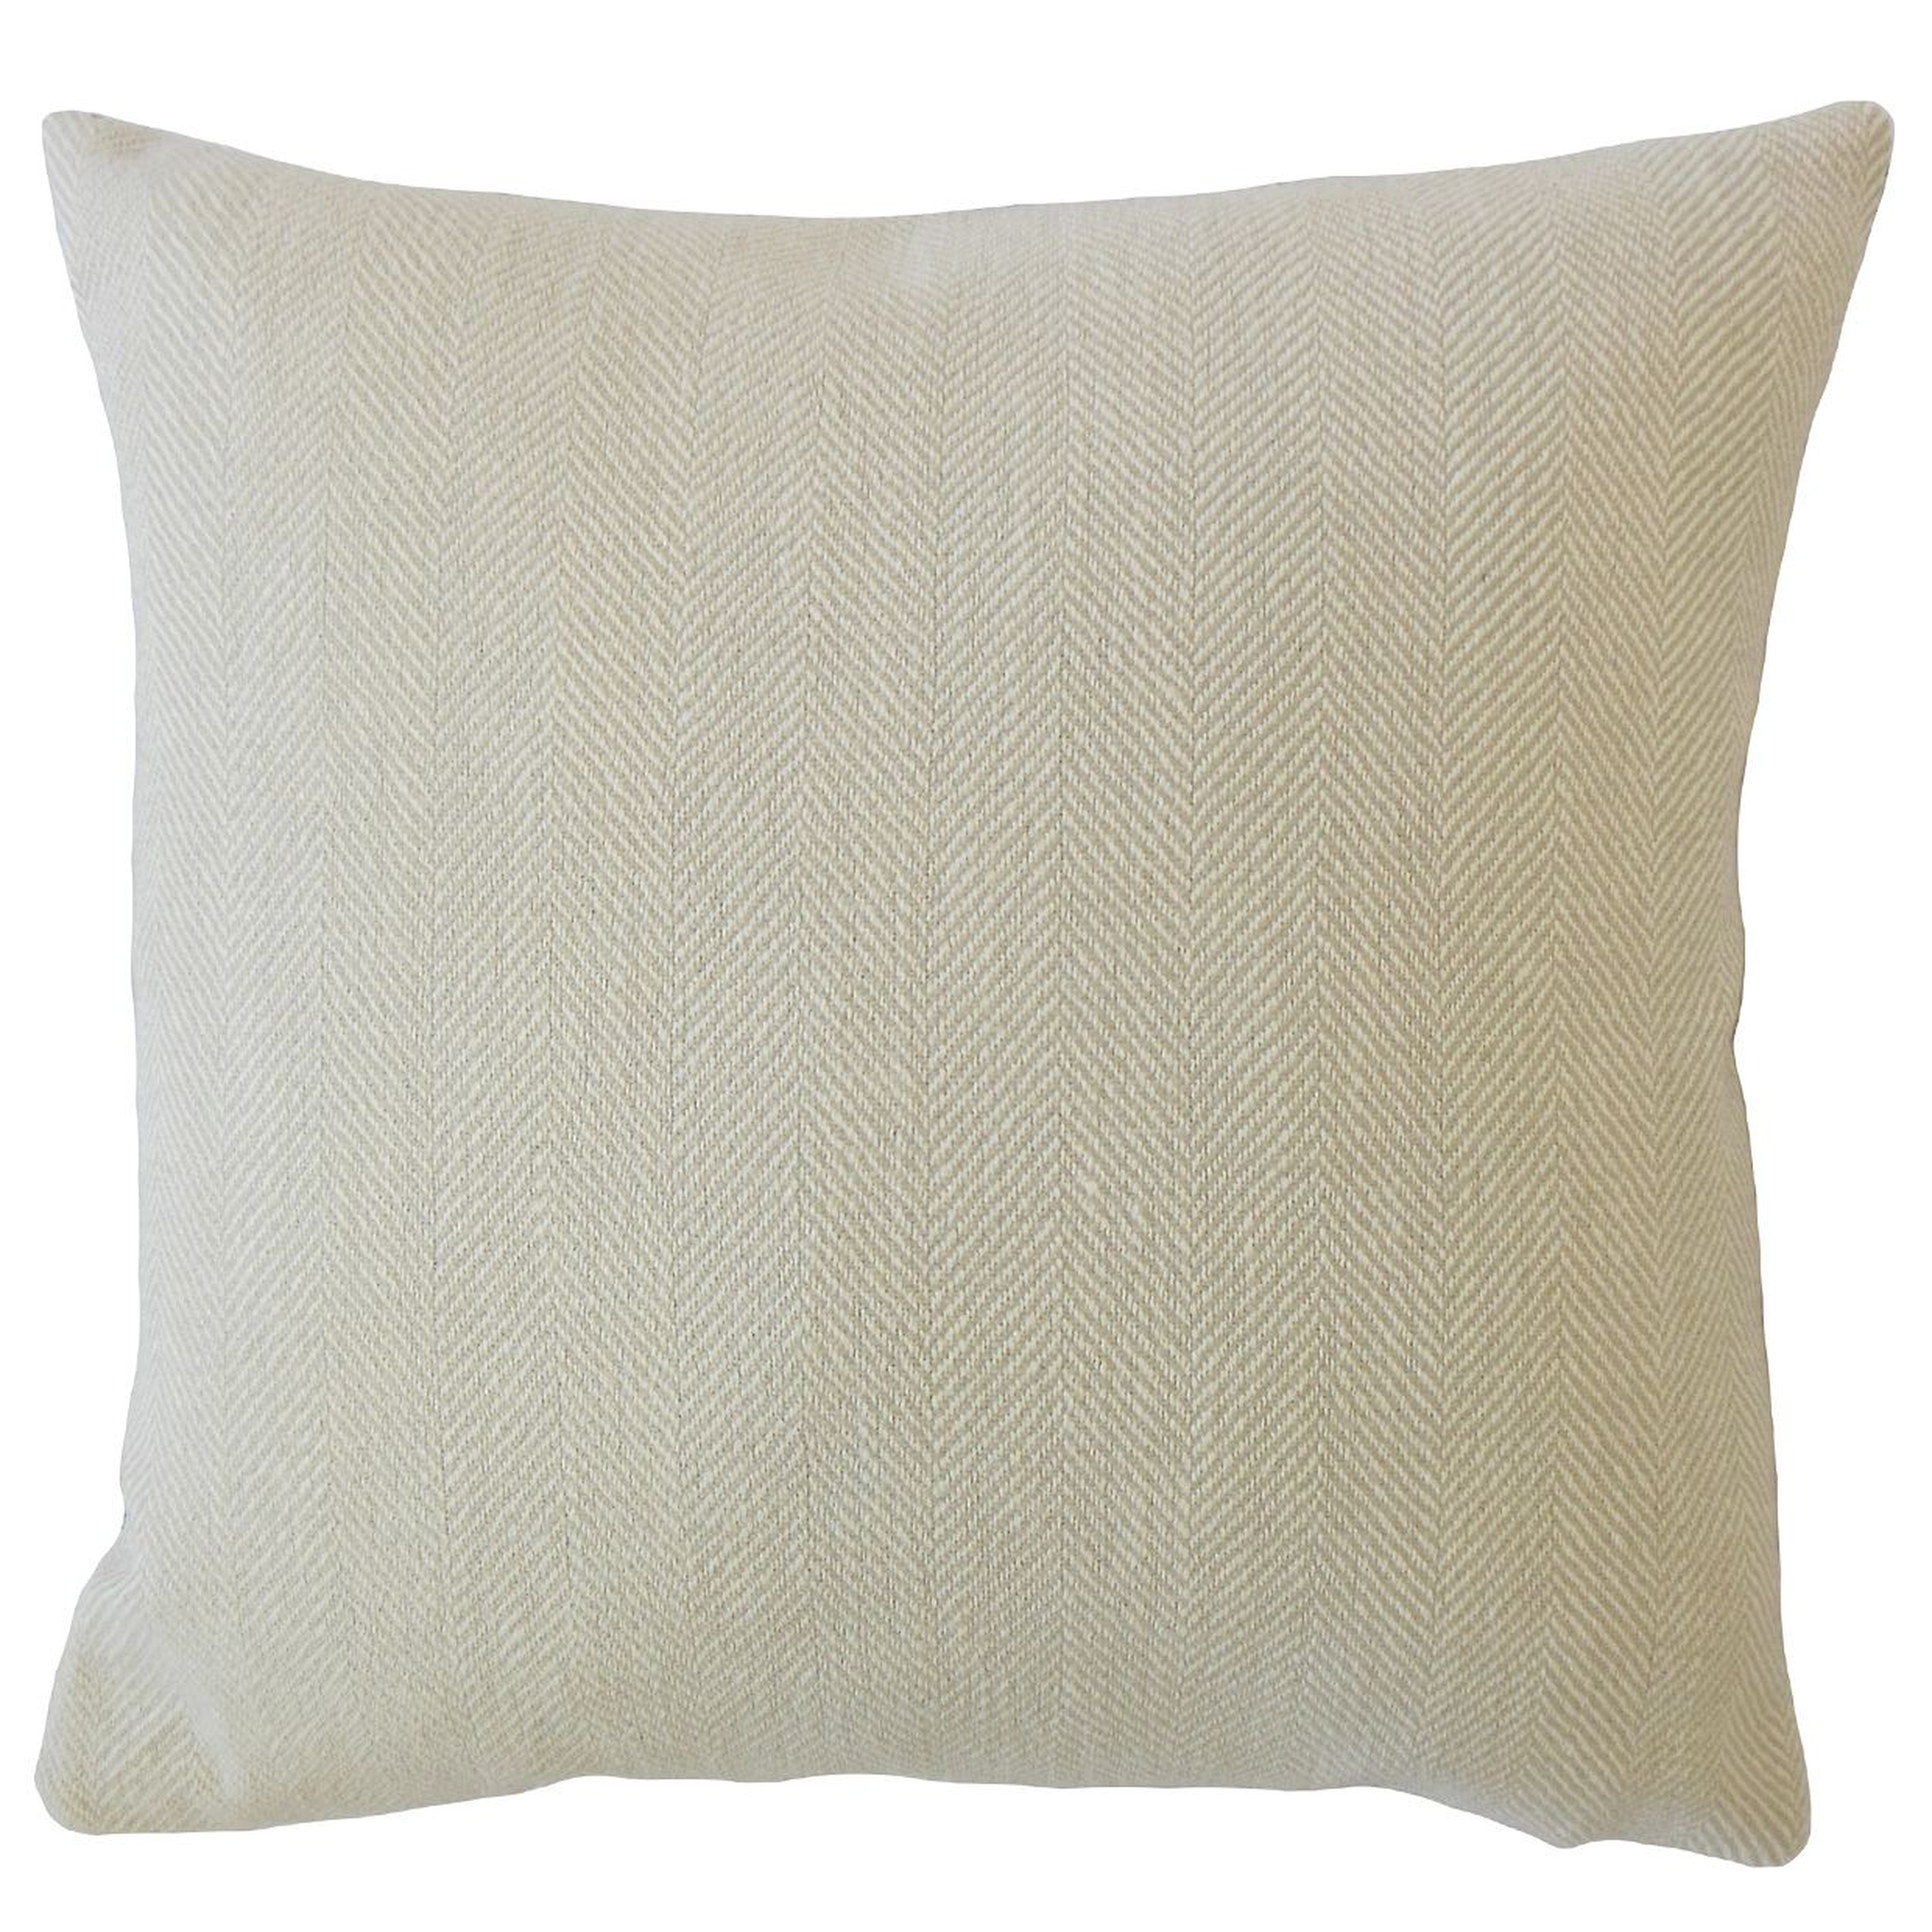 Linen Herringbone Pillow, Cement, 22" x 22" - Havenly Essentials